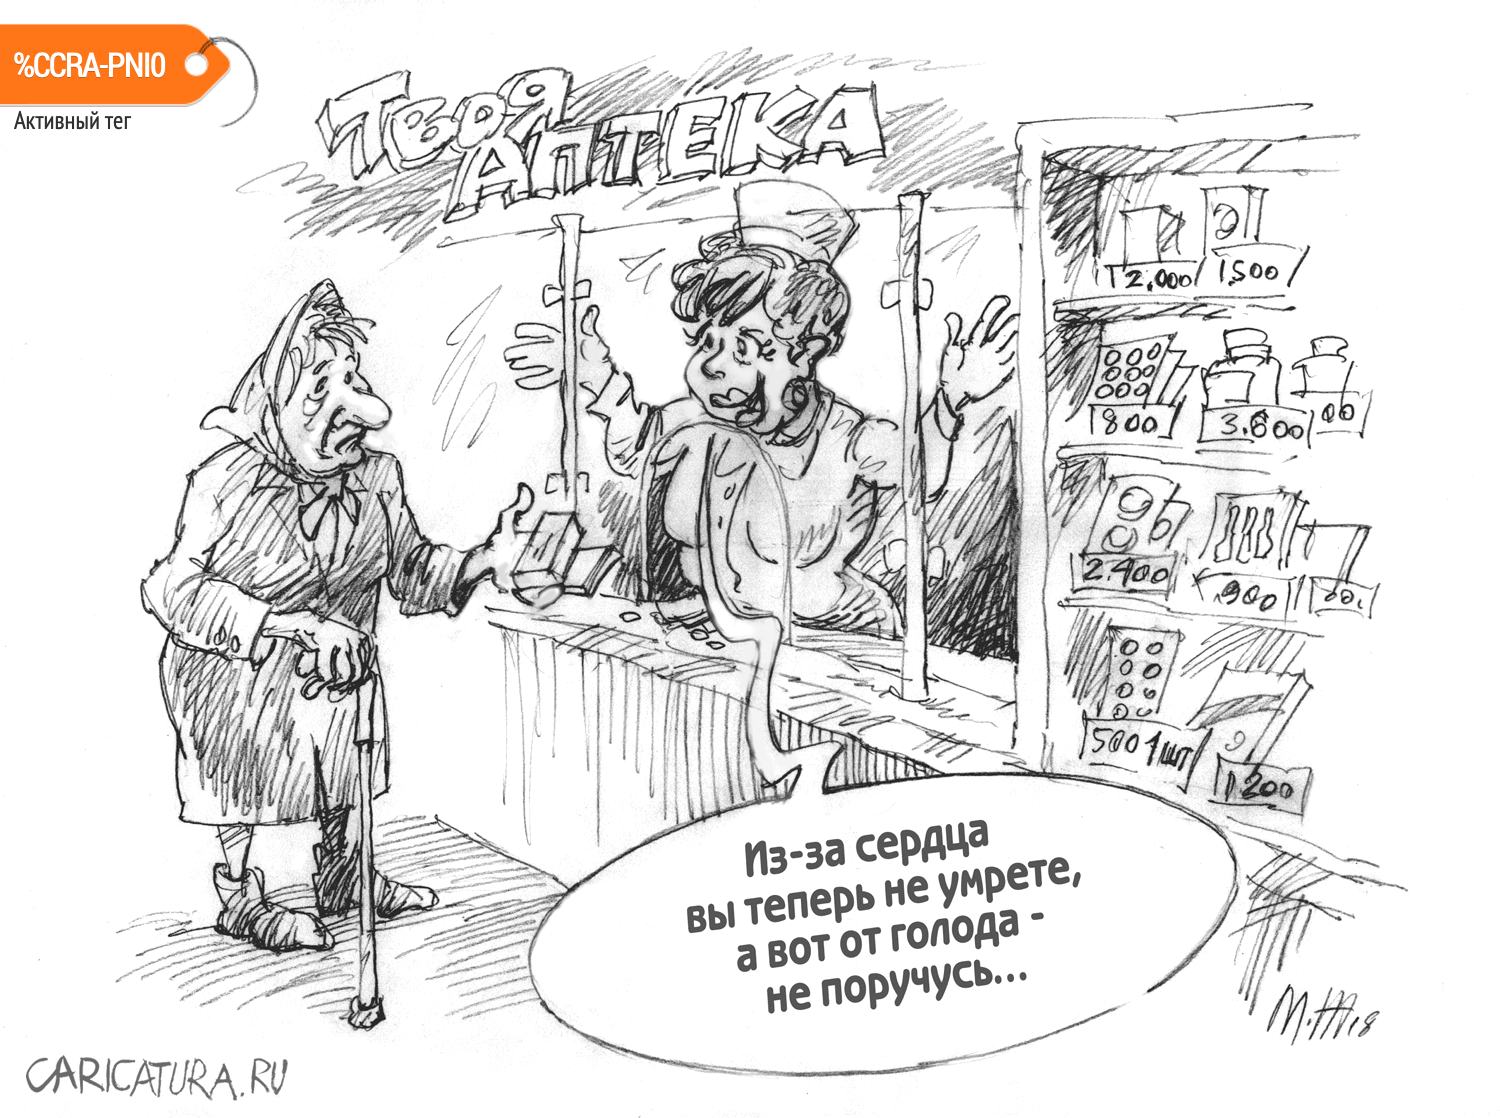 Карикатура "Исцеление", Михаил Жилкин